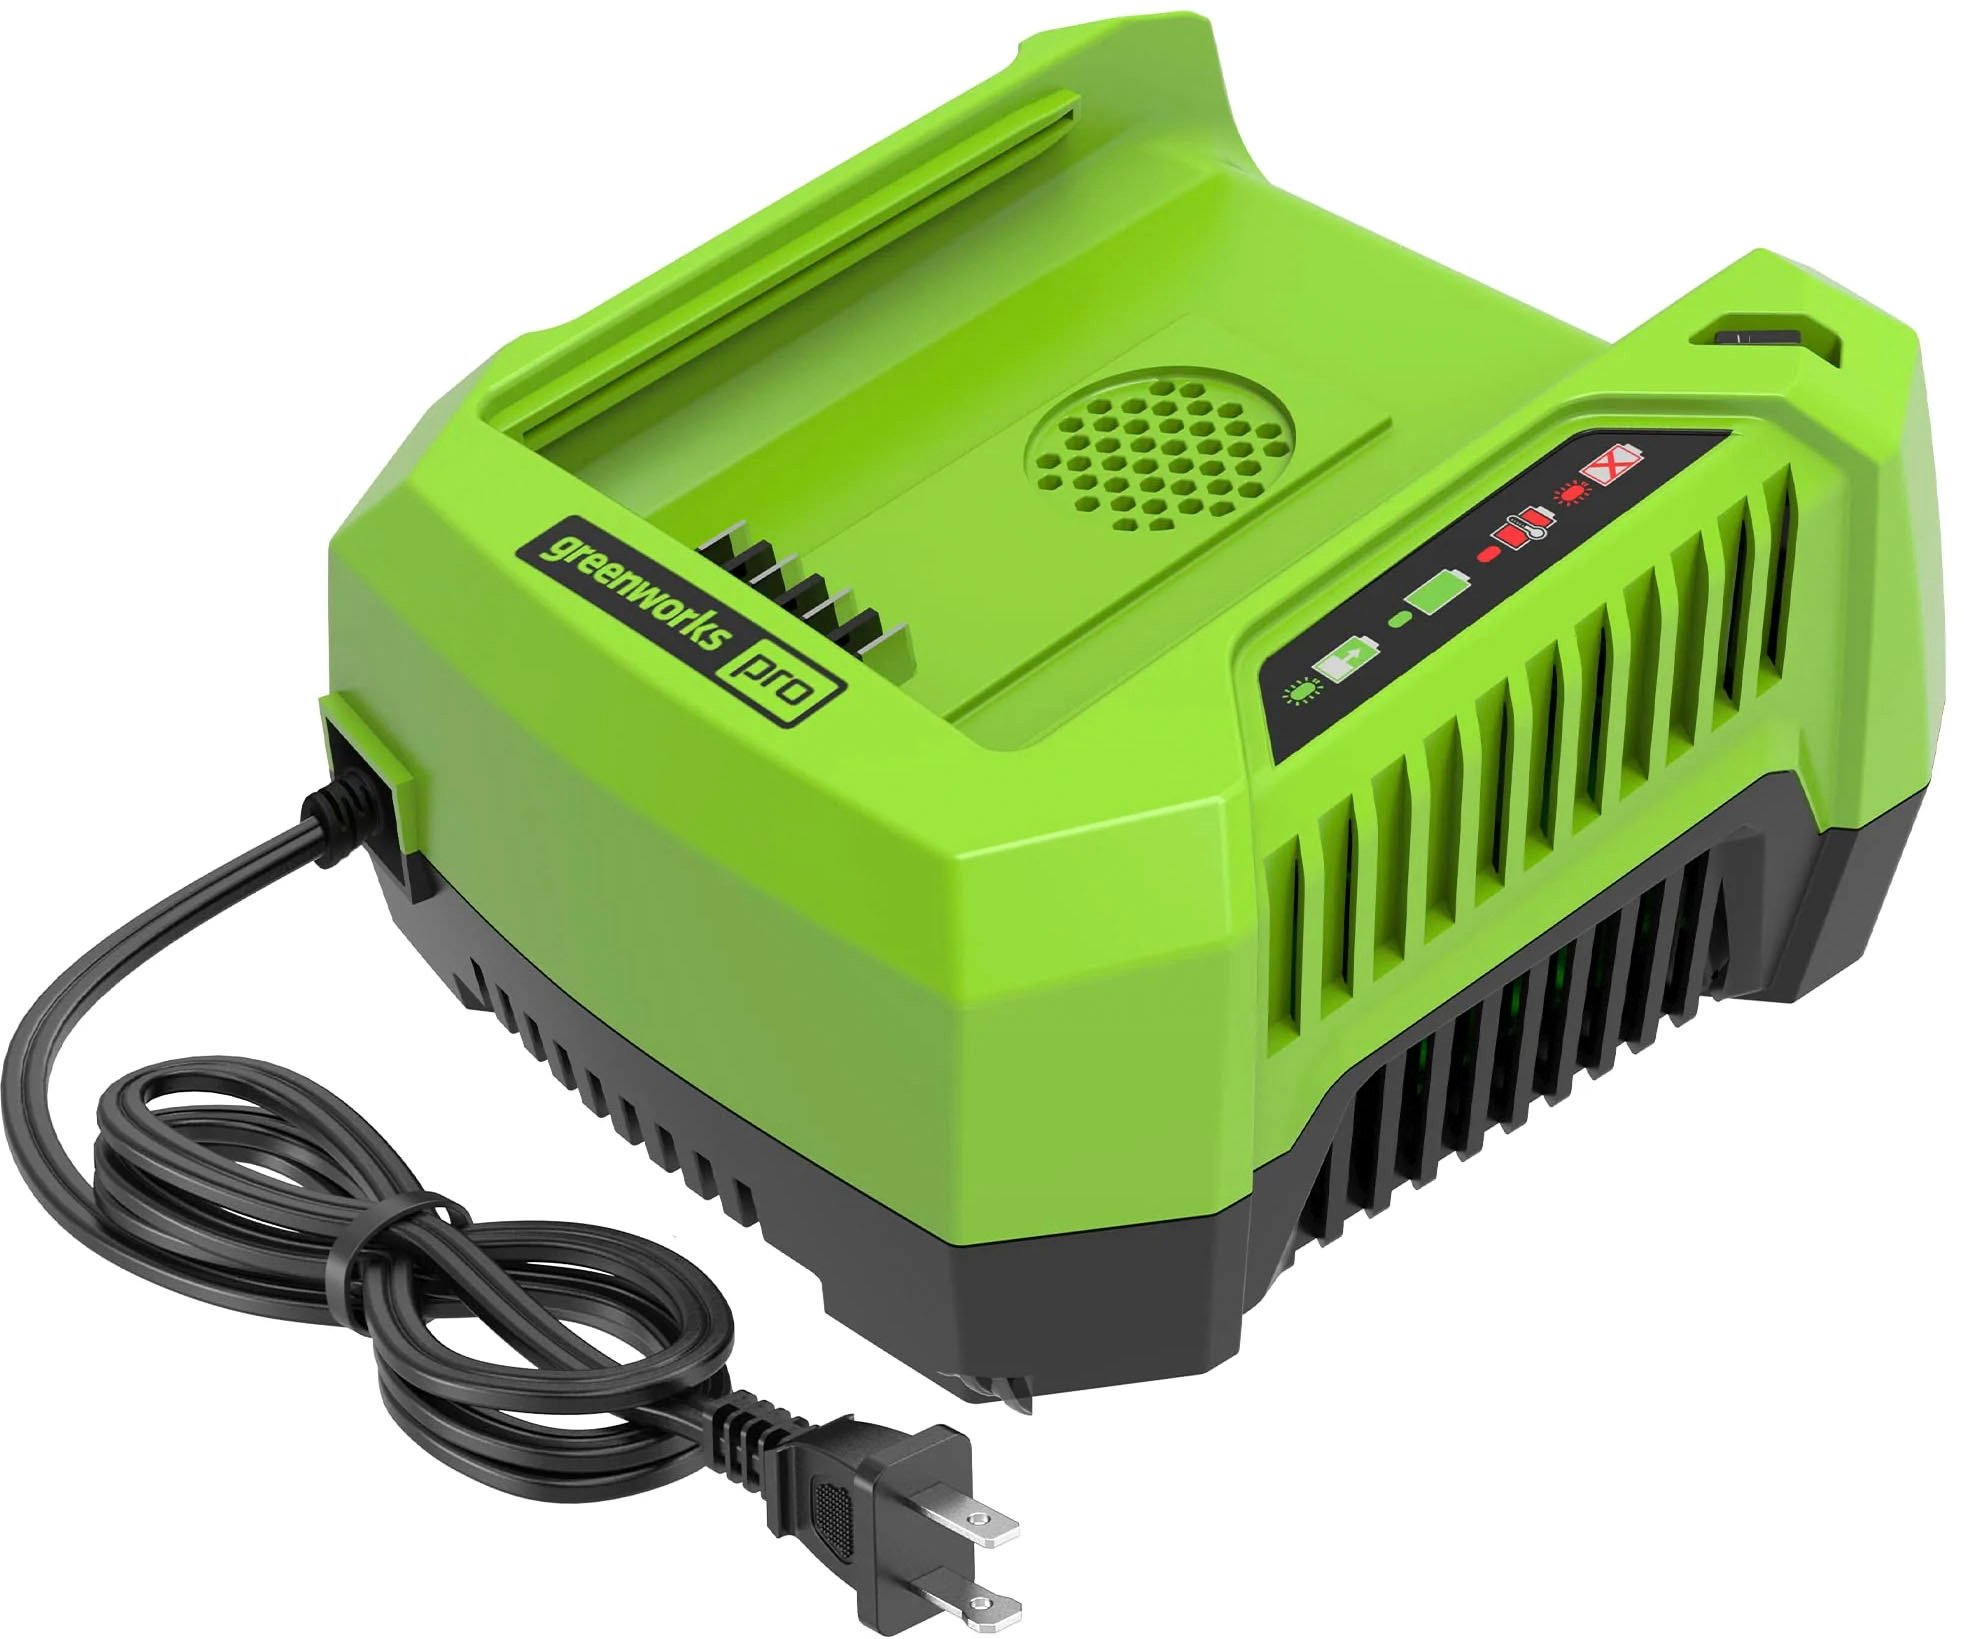 Greenworks - PRO 80V Rapid Charger (GCH8040) - Green